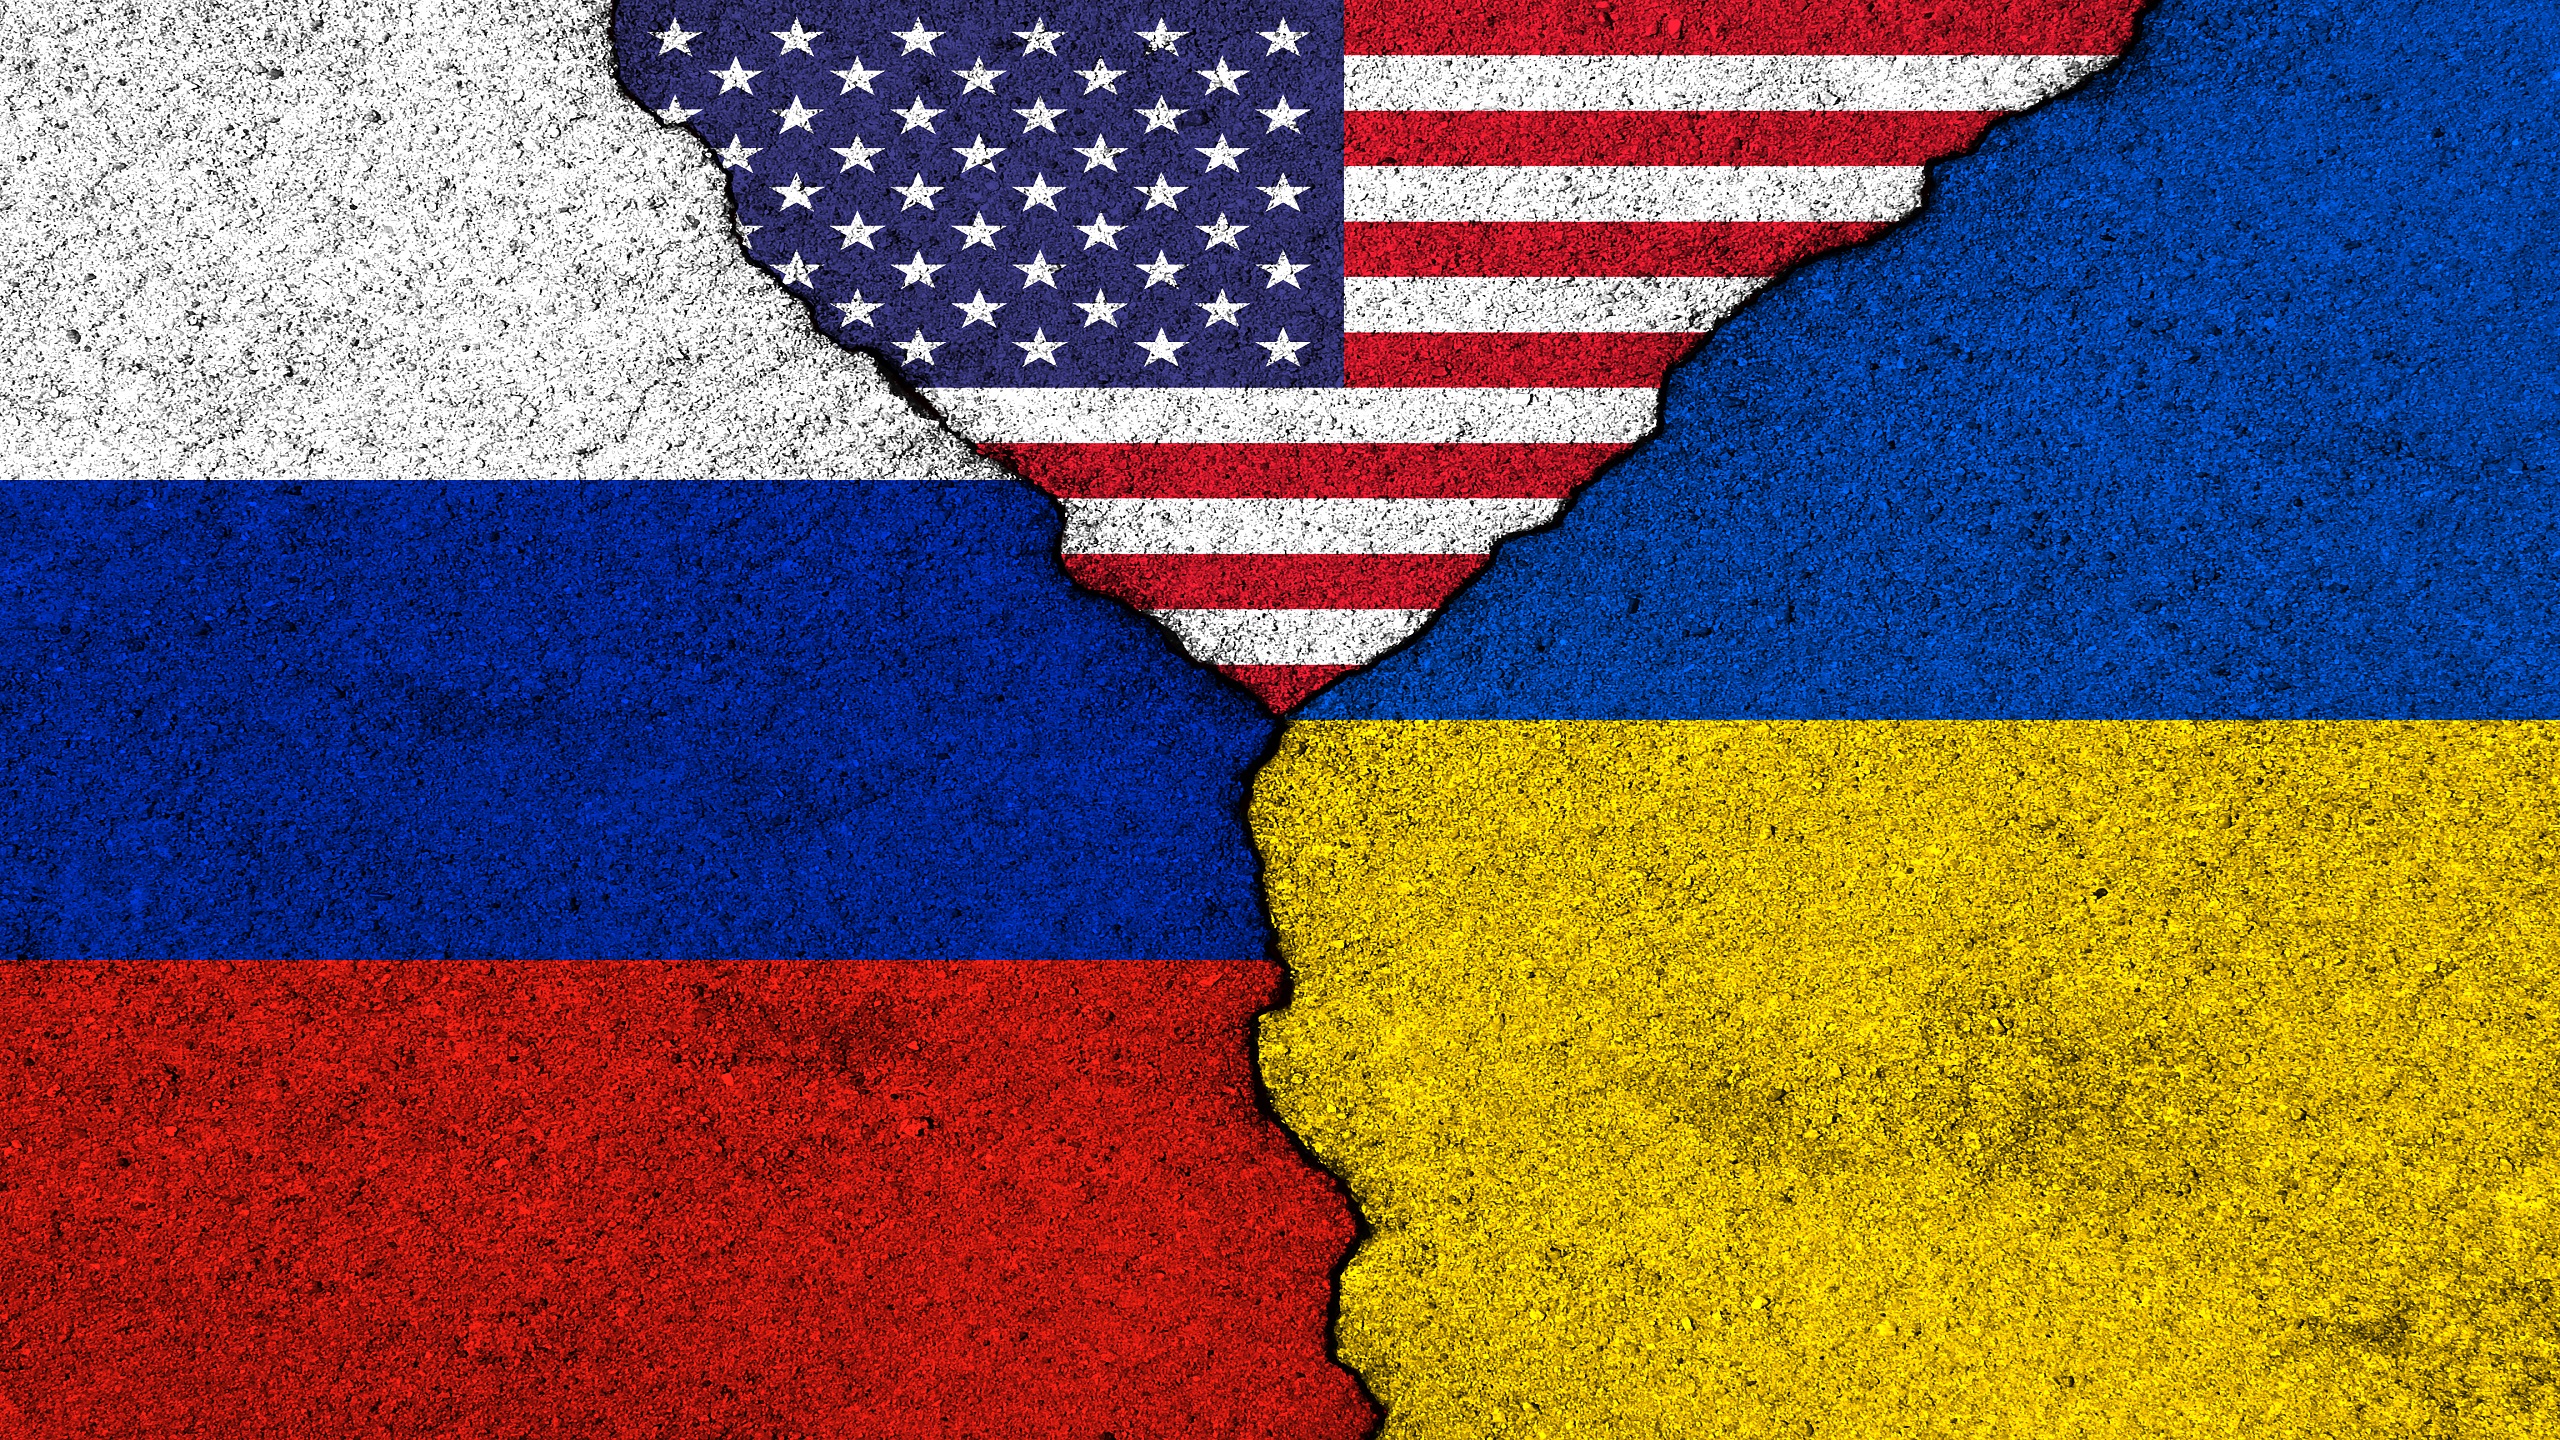 Moskwa: stosunki dyplomatyczne ze Stanami Zjednoczonymi mog si zakoczy